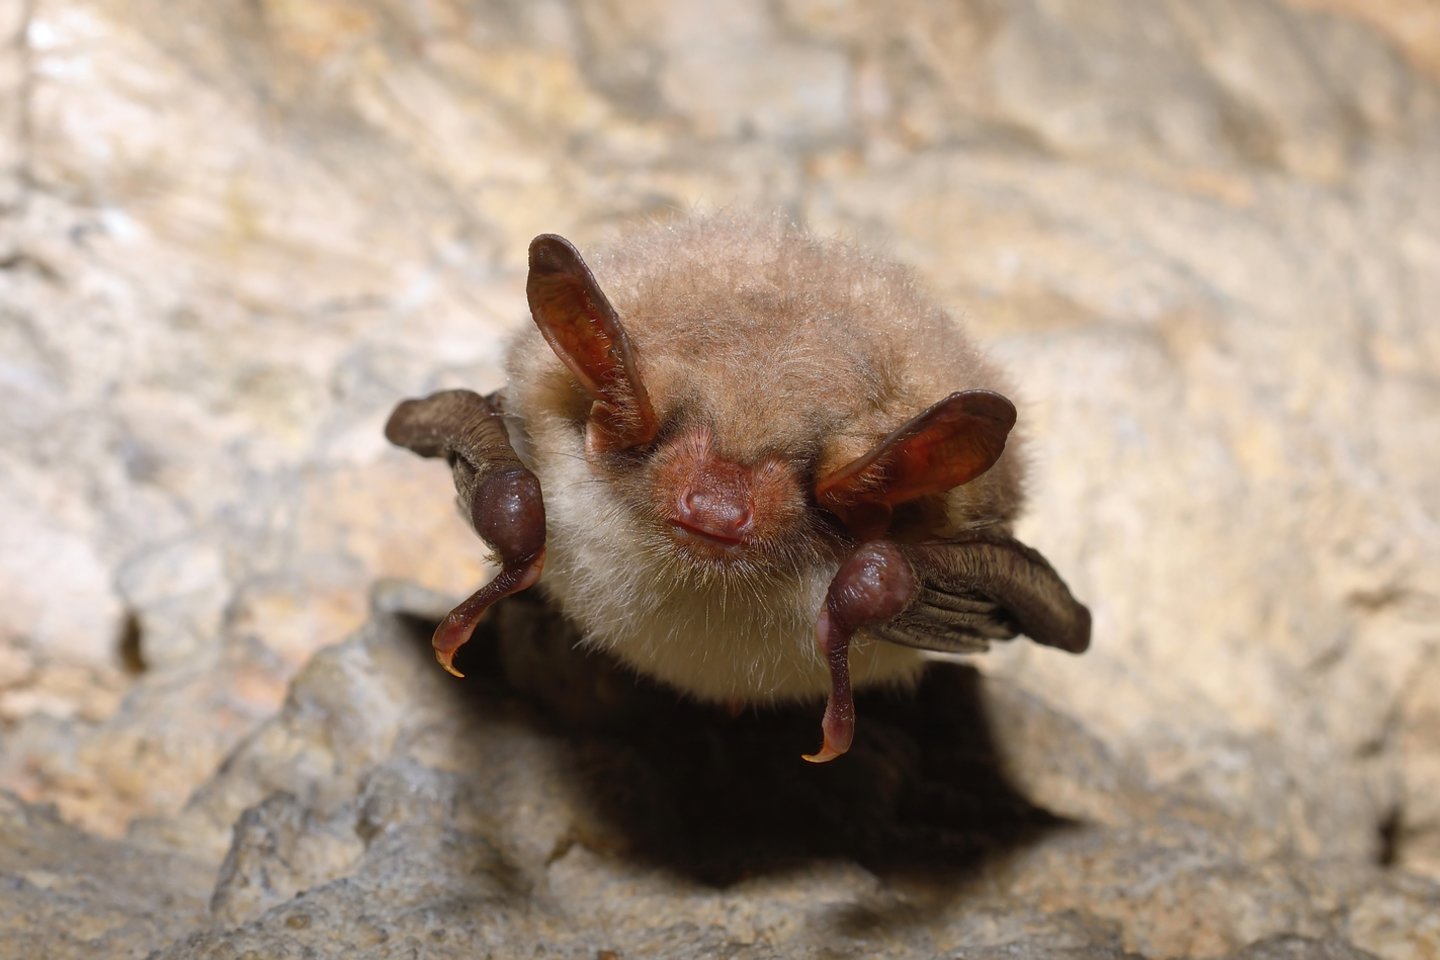  Šikšnosparnių ekspertai pradėjo kampaniją „Nekaltink šikšnosparnių“ – kad išsklaidytų nepagrįstas baimes ir mitus apie šikšnosparnius, keliančius grėsmę gamtos apsaugai.<br> 123rf nuotr.